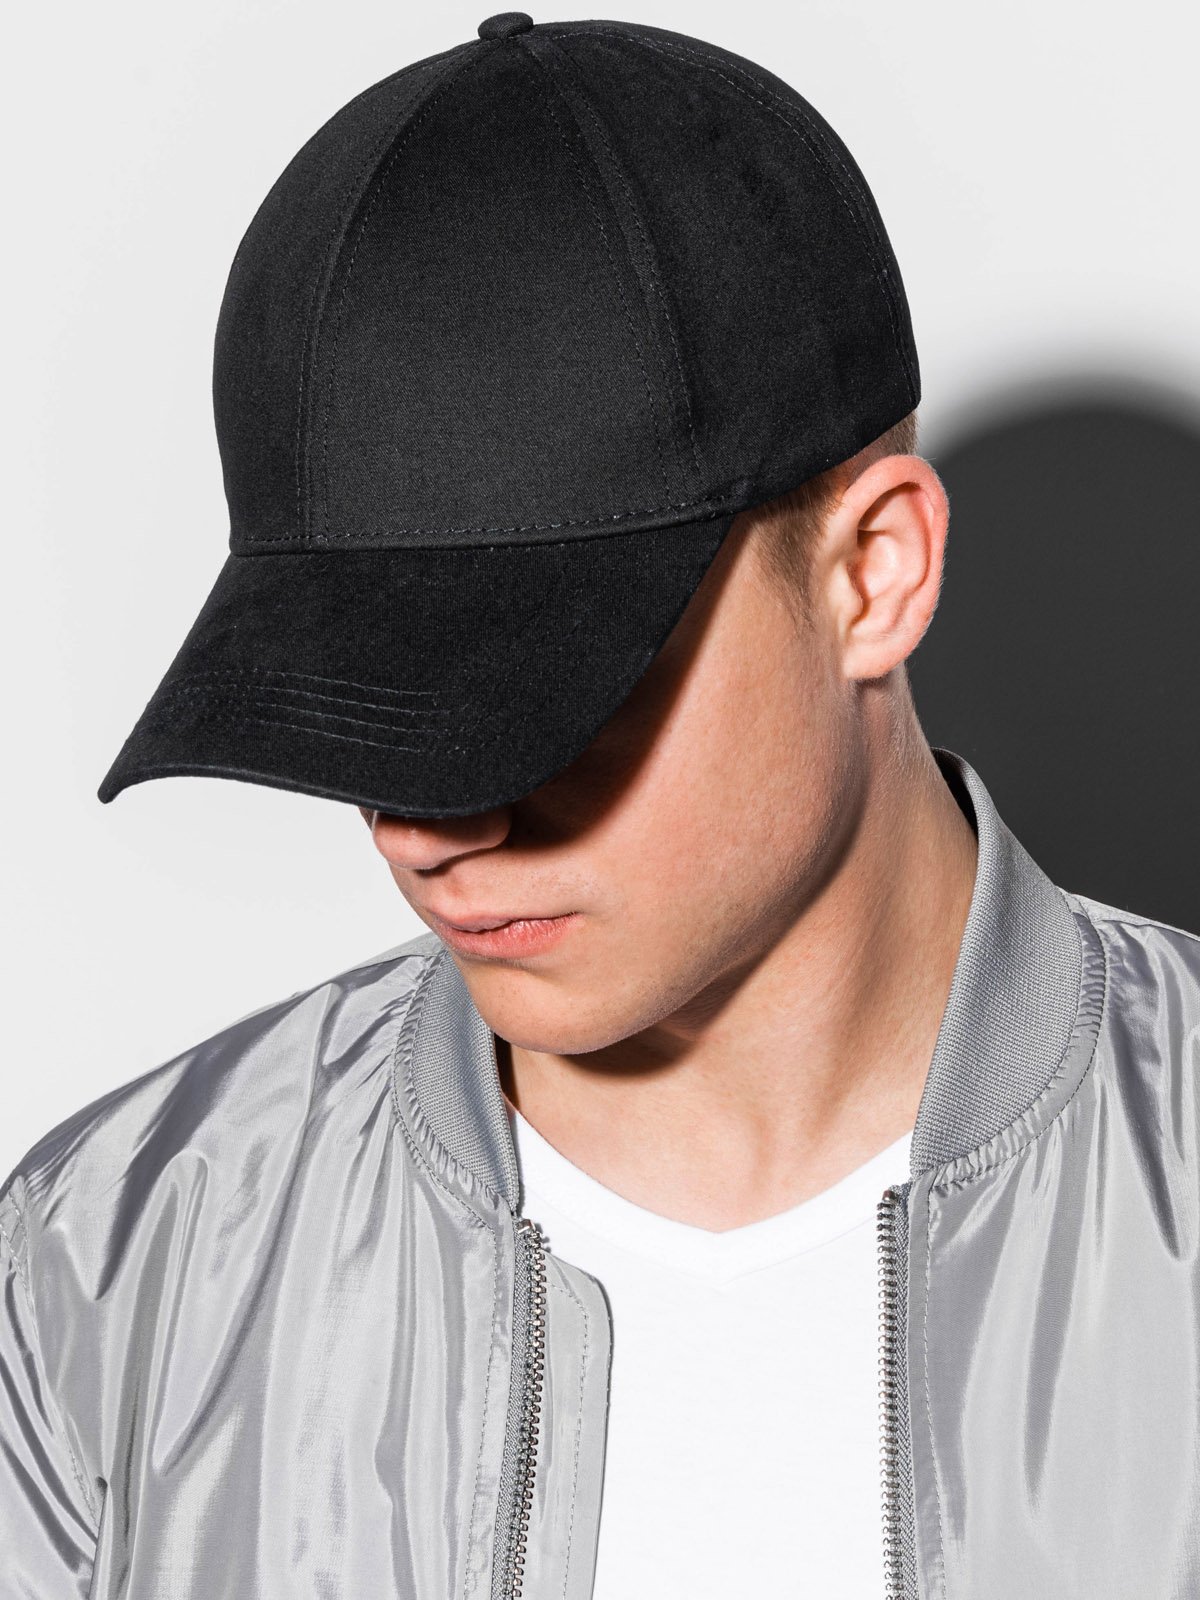 Men's cap - black H014  MODONE wholesale - Clothing For Men